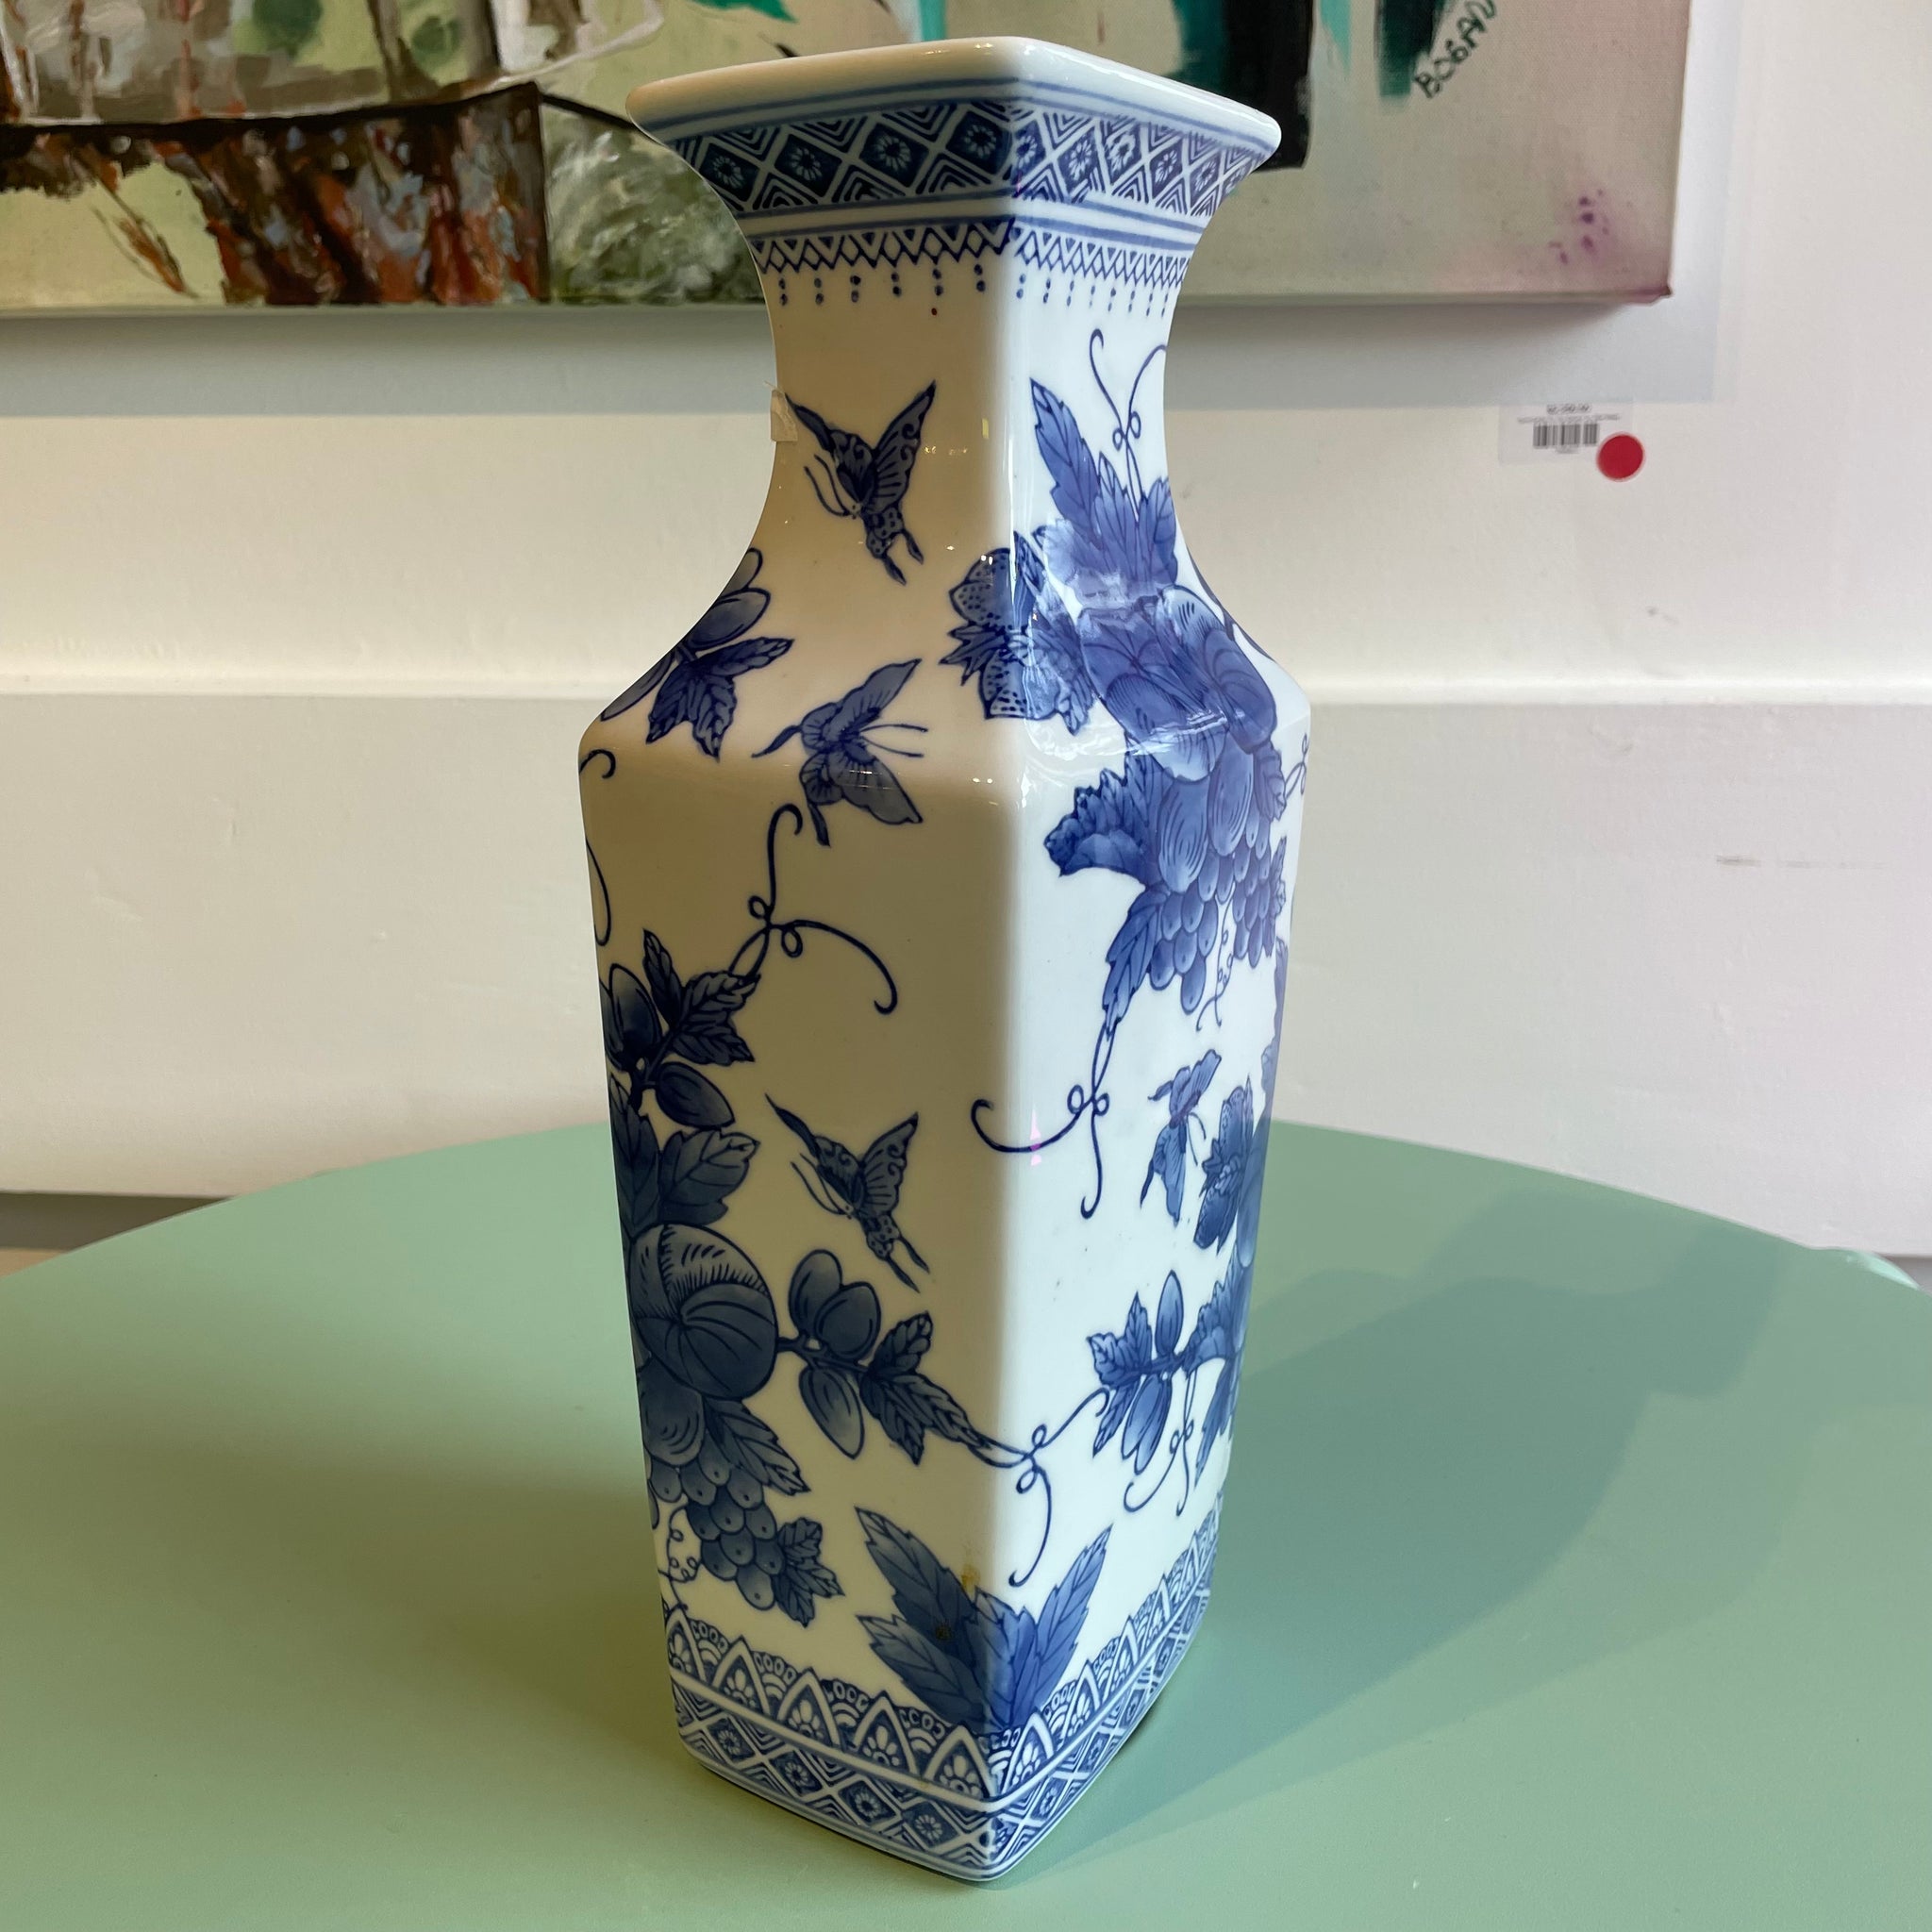 Large Decorative Vase